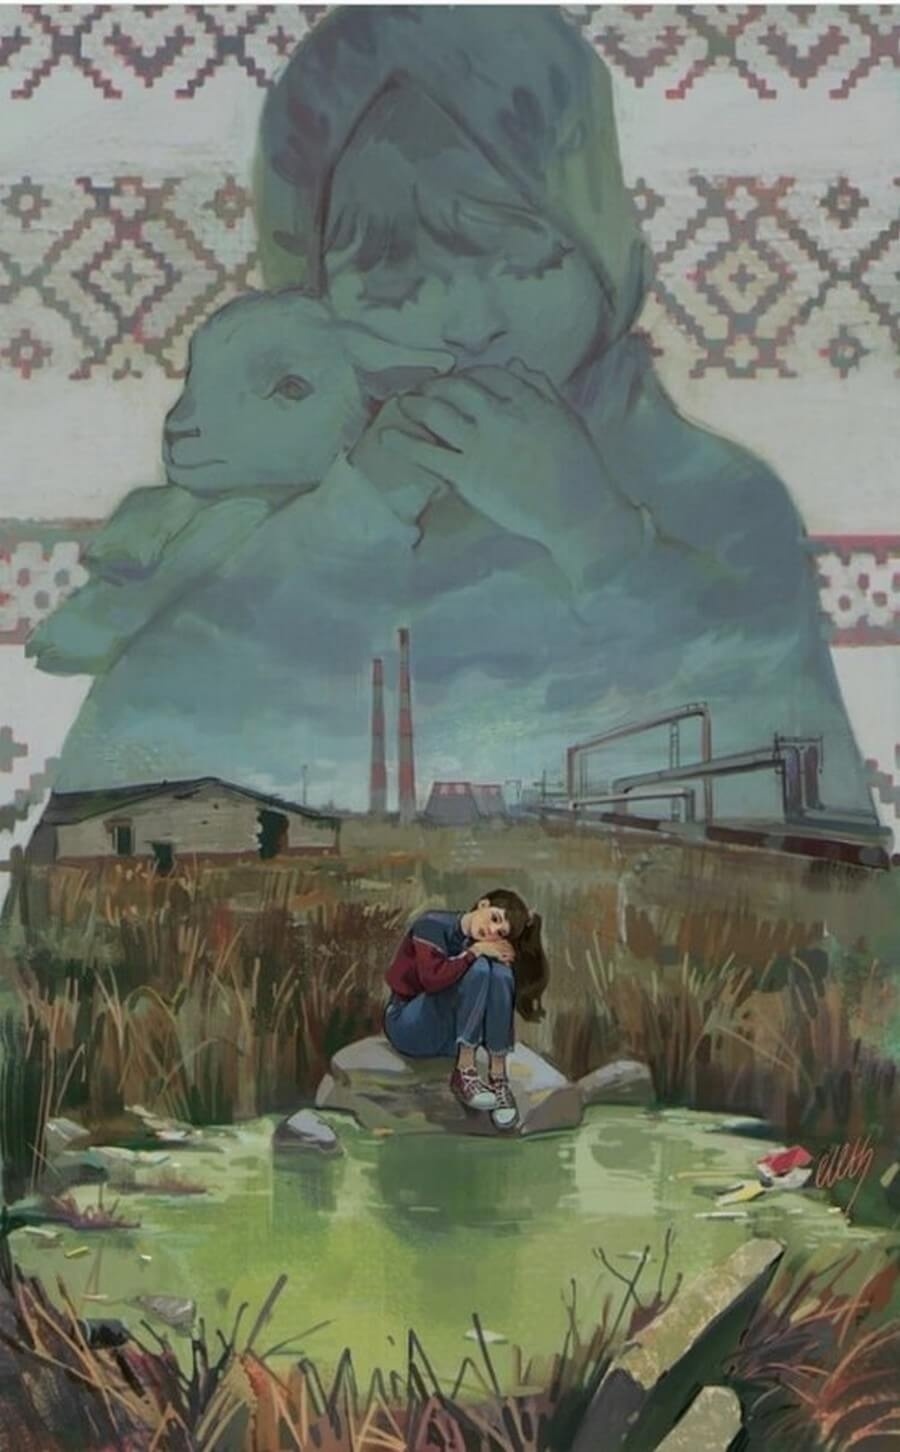 Sovietwave и Sovietpunk: как романтика несбывшегося переплавила ностальгию по СССР в новый жанр? Часть 2 - 36